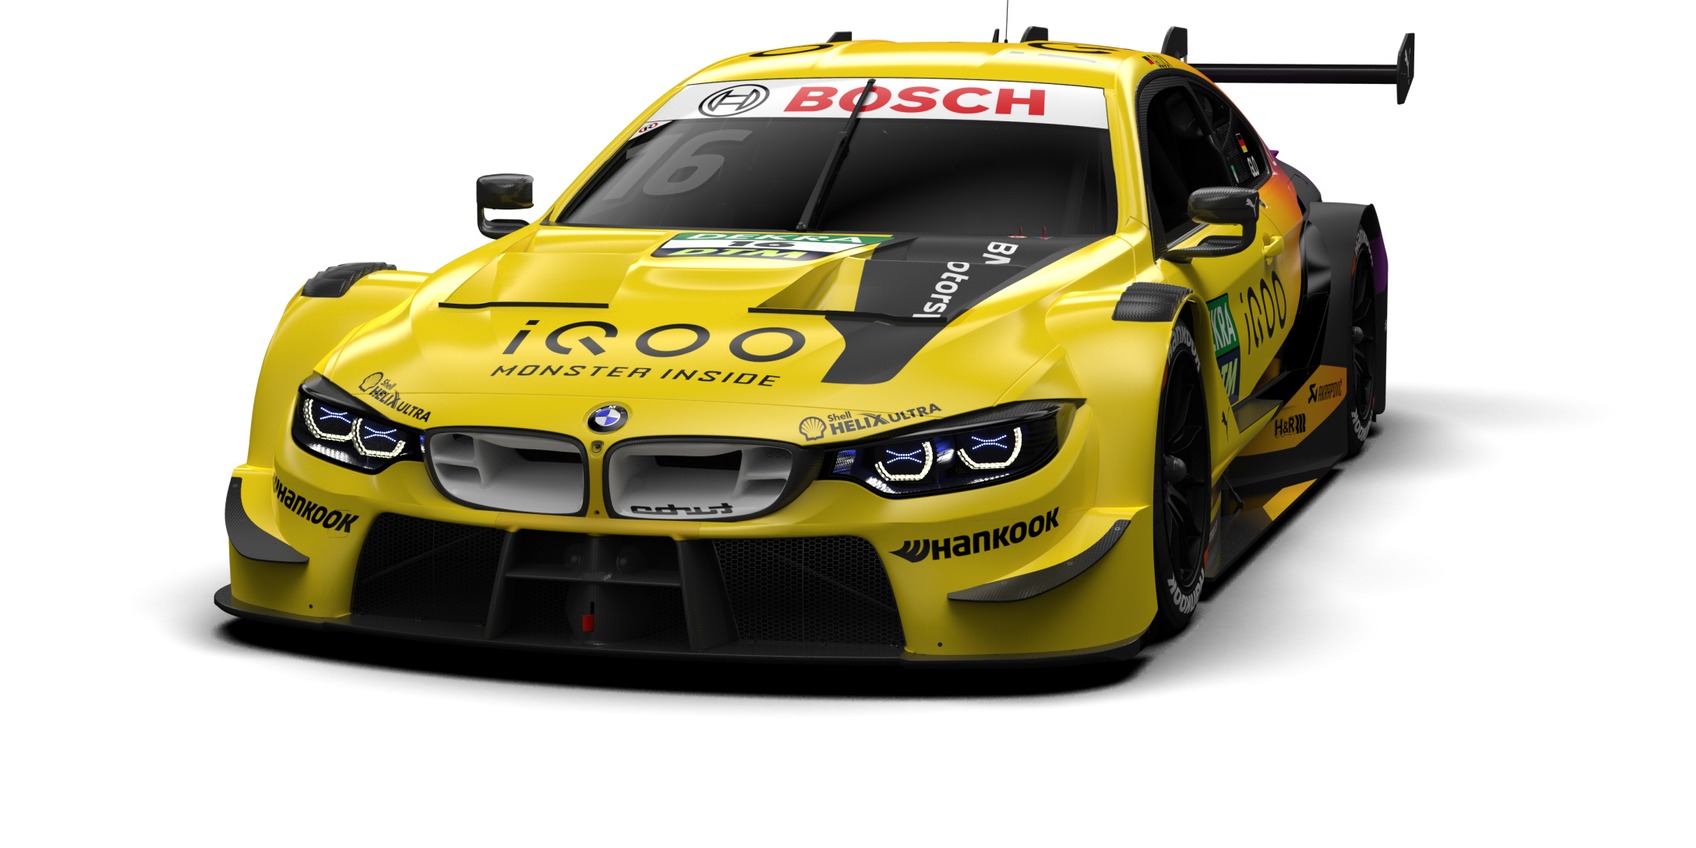 BMW zeigt Designs für DTM-Saison 2020: Timo Glock wieder in Gelb!